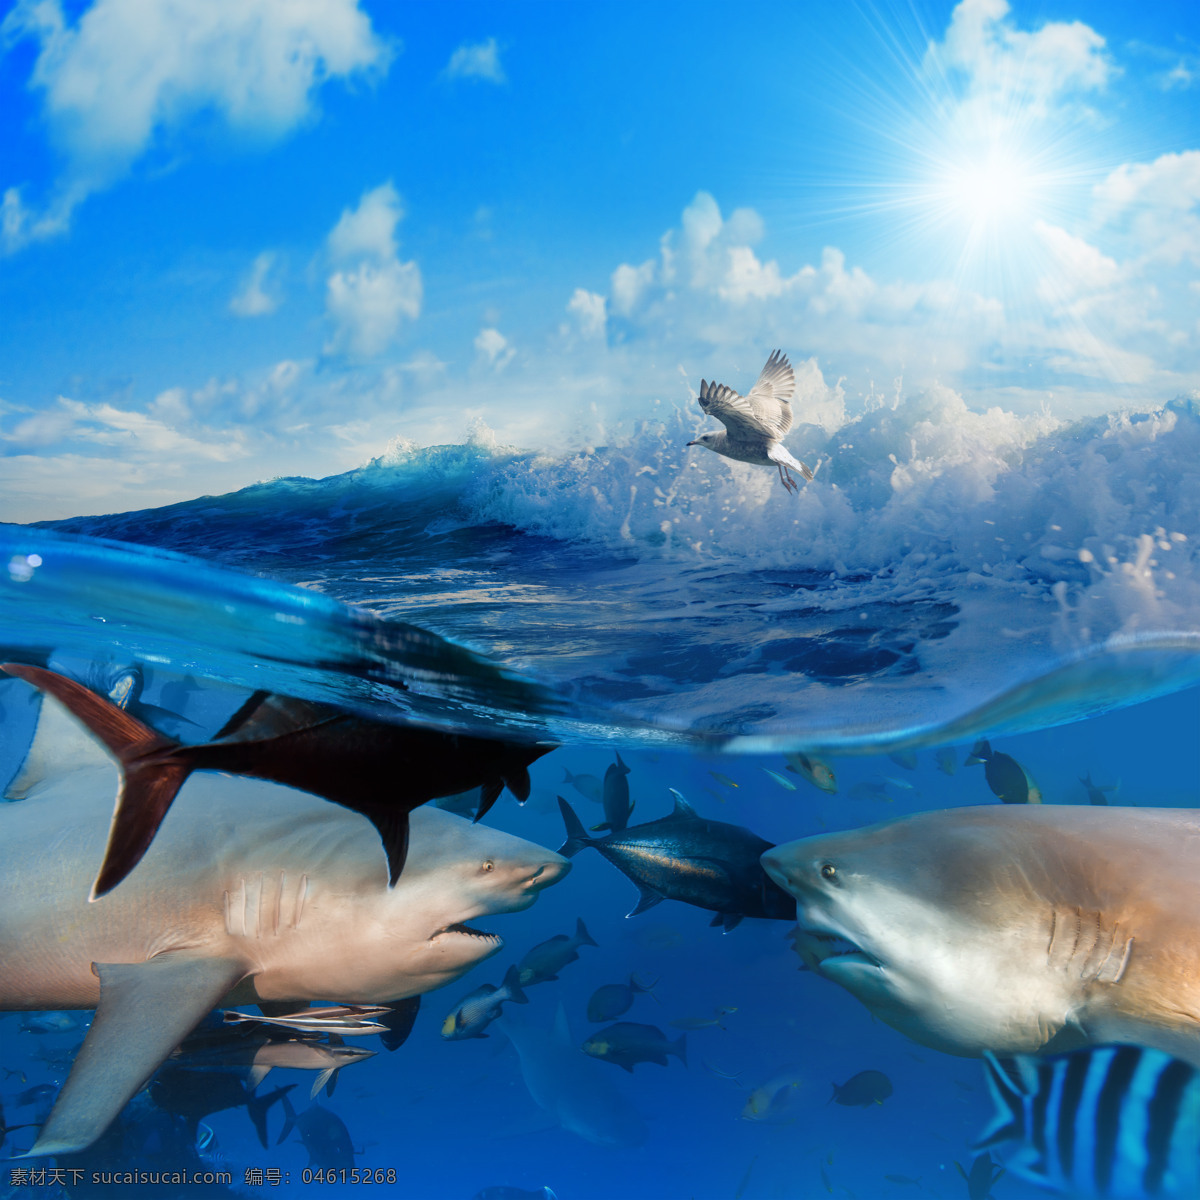 海水 中 鱼类 鱼 鱼类动物 海底生物 水中生物 海洋生物 海洋动物 动物世界 生物世界 大海图片 风景图片